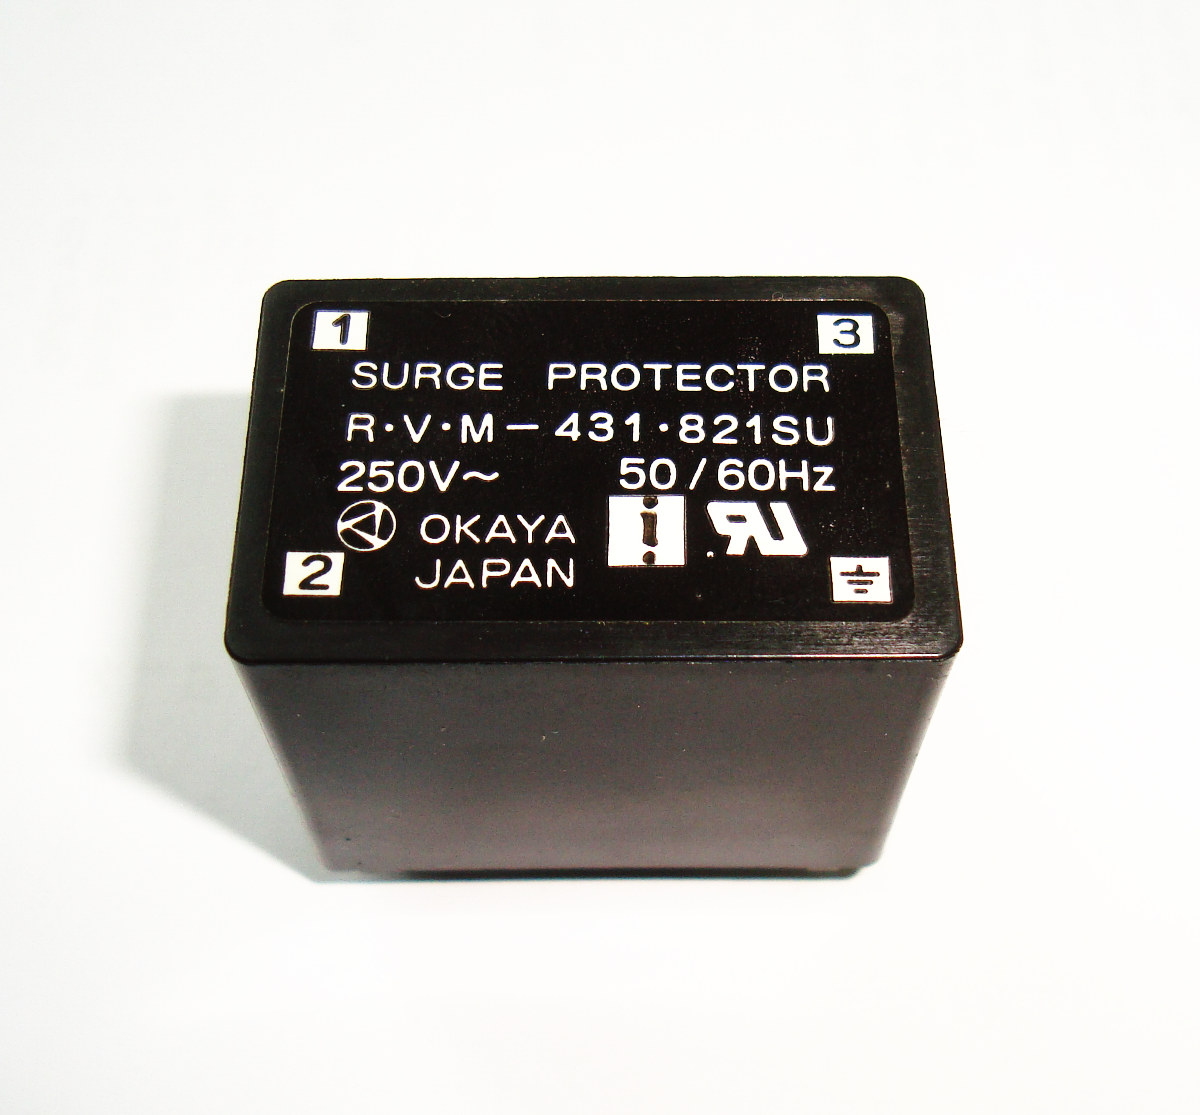 1 Surge Protector Rvm-431821su Shop